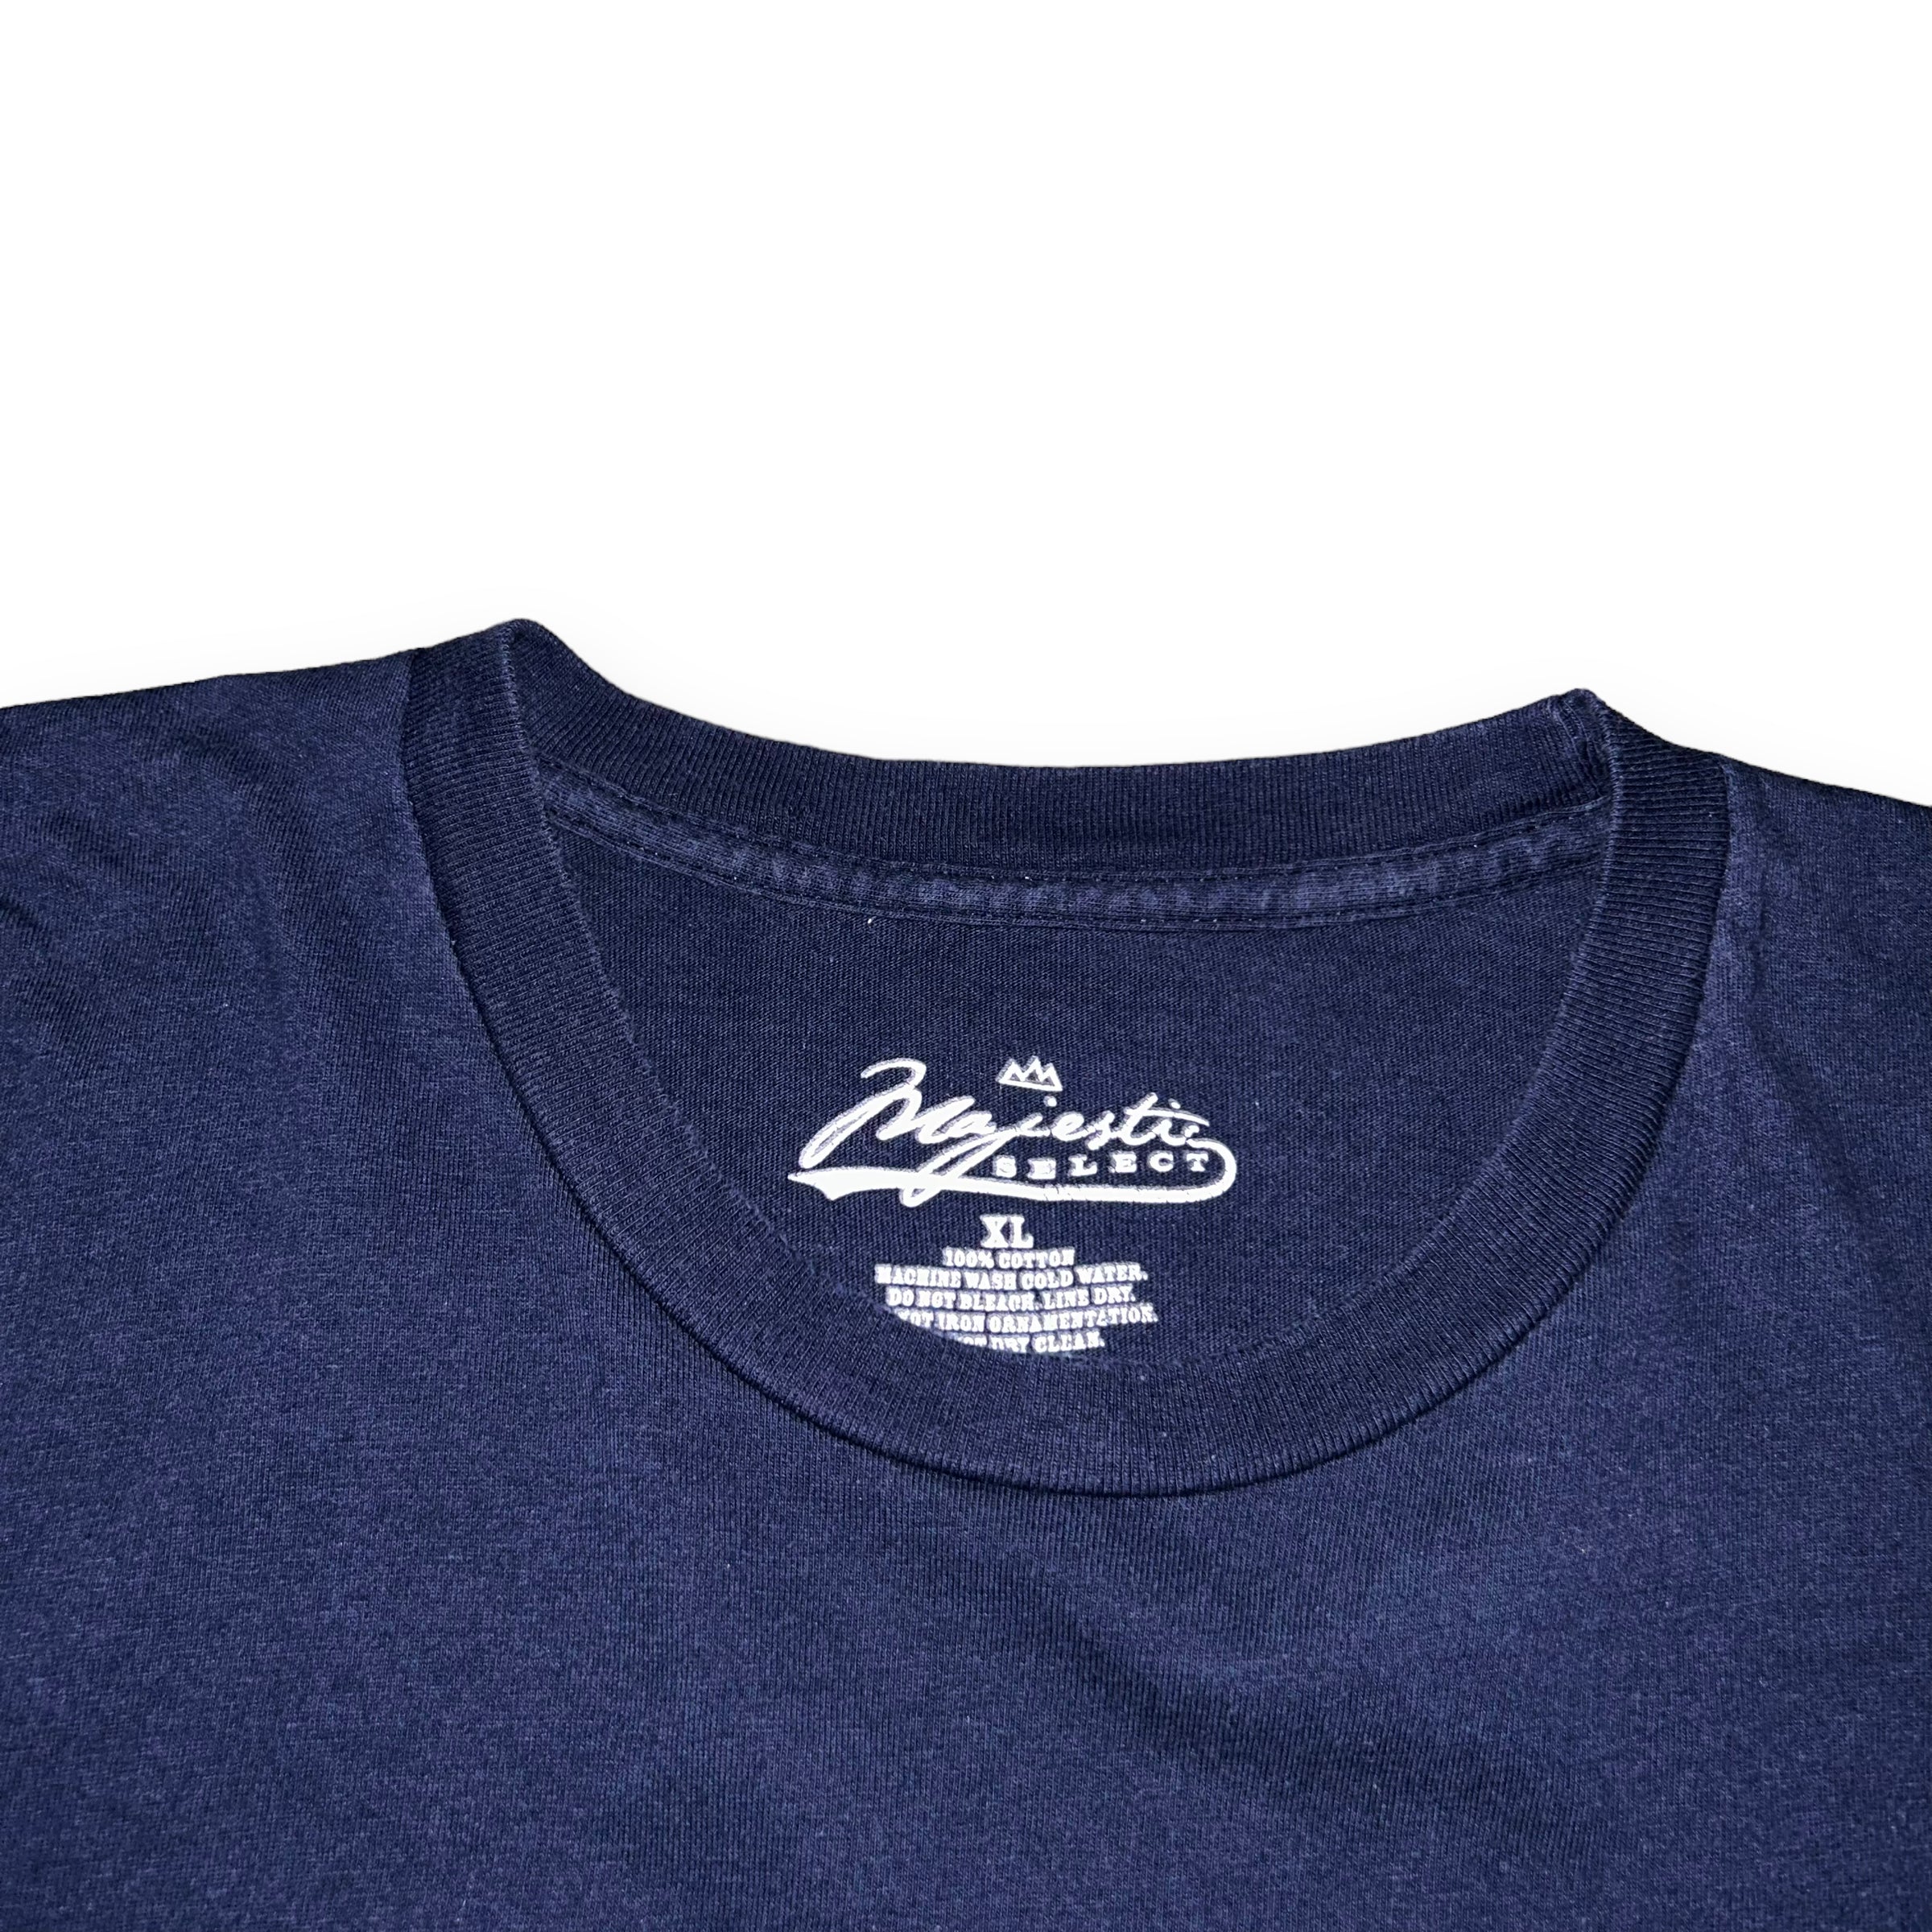 T-shirt Chicago Cubs MLB Vintage  (L)